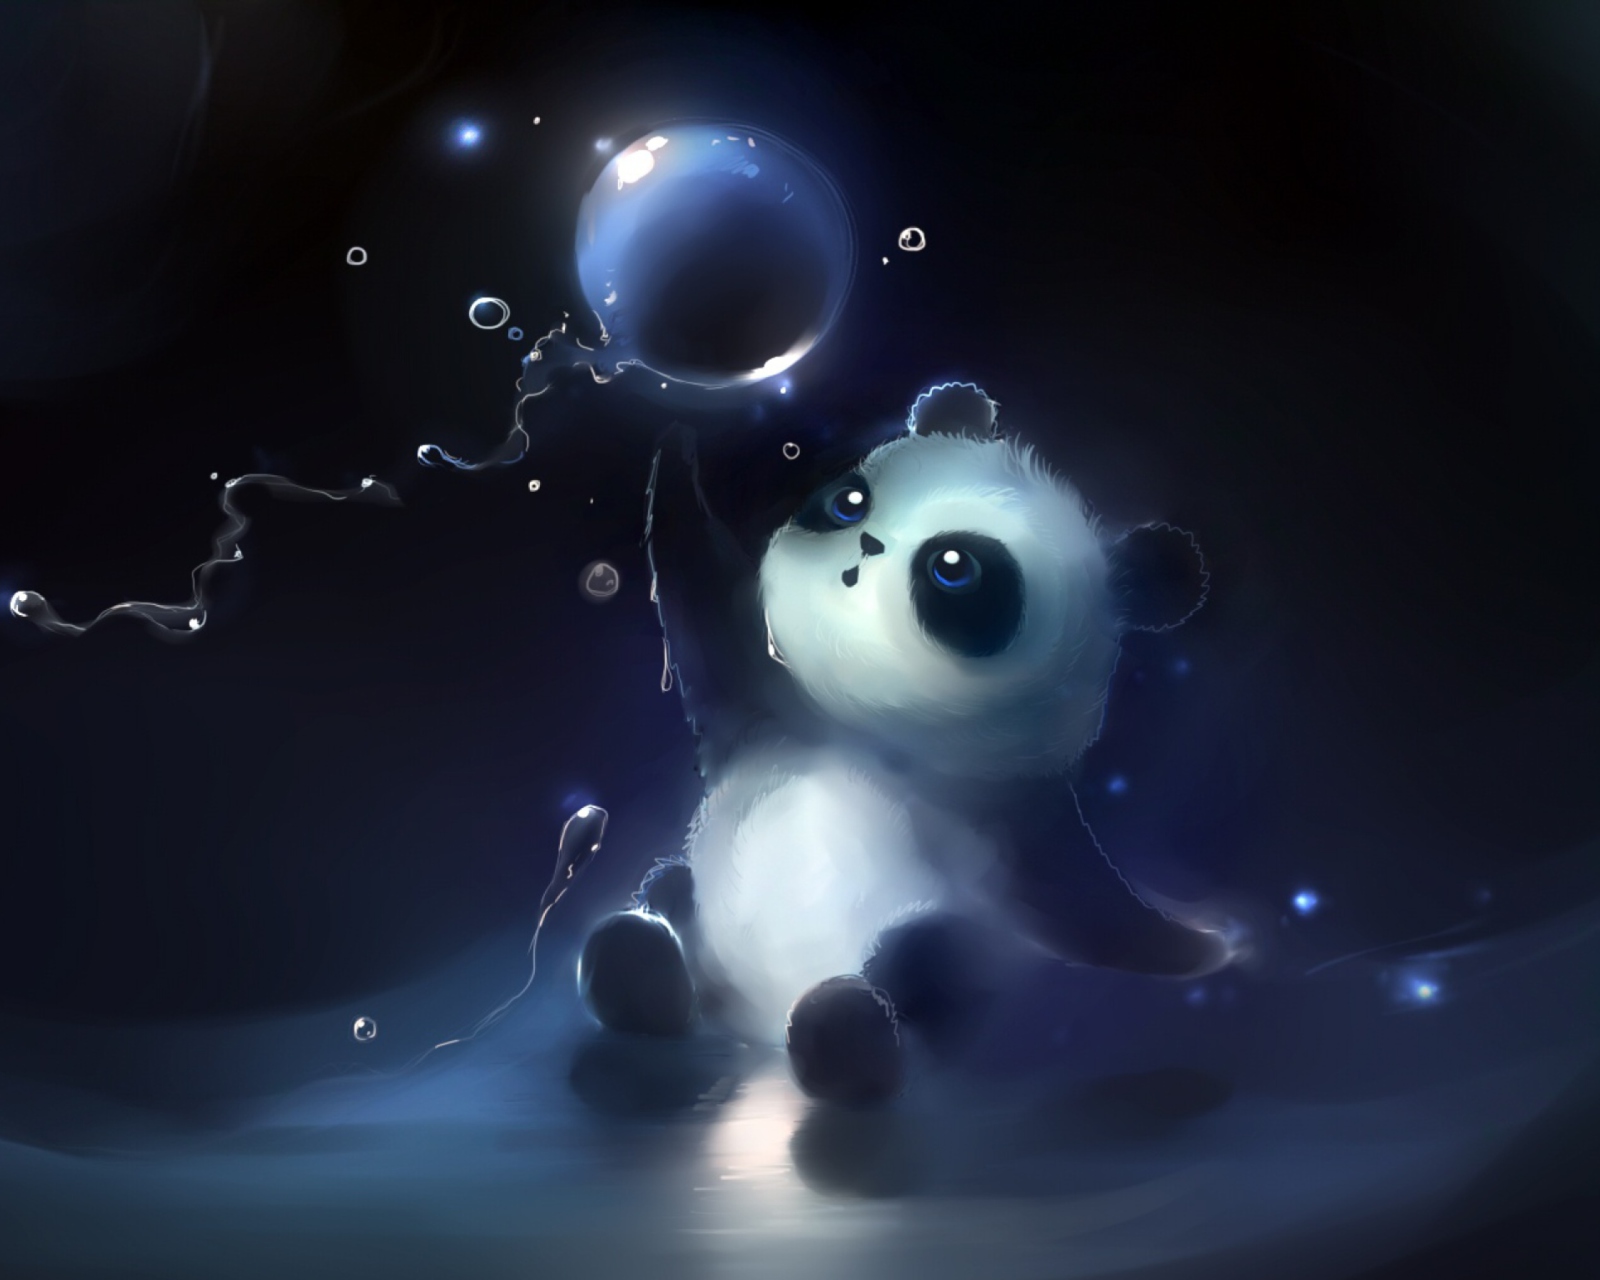 Cute Little Panda With Balloon wallpaper 1600x1280